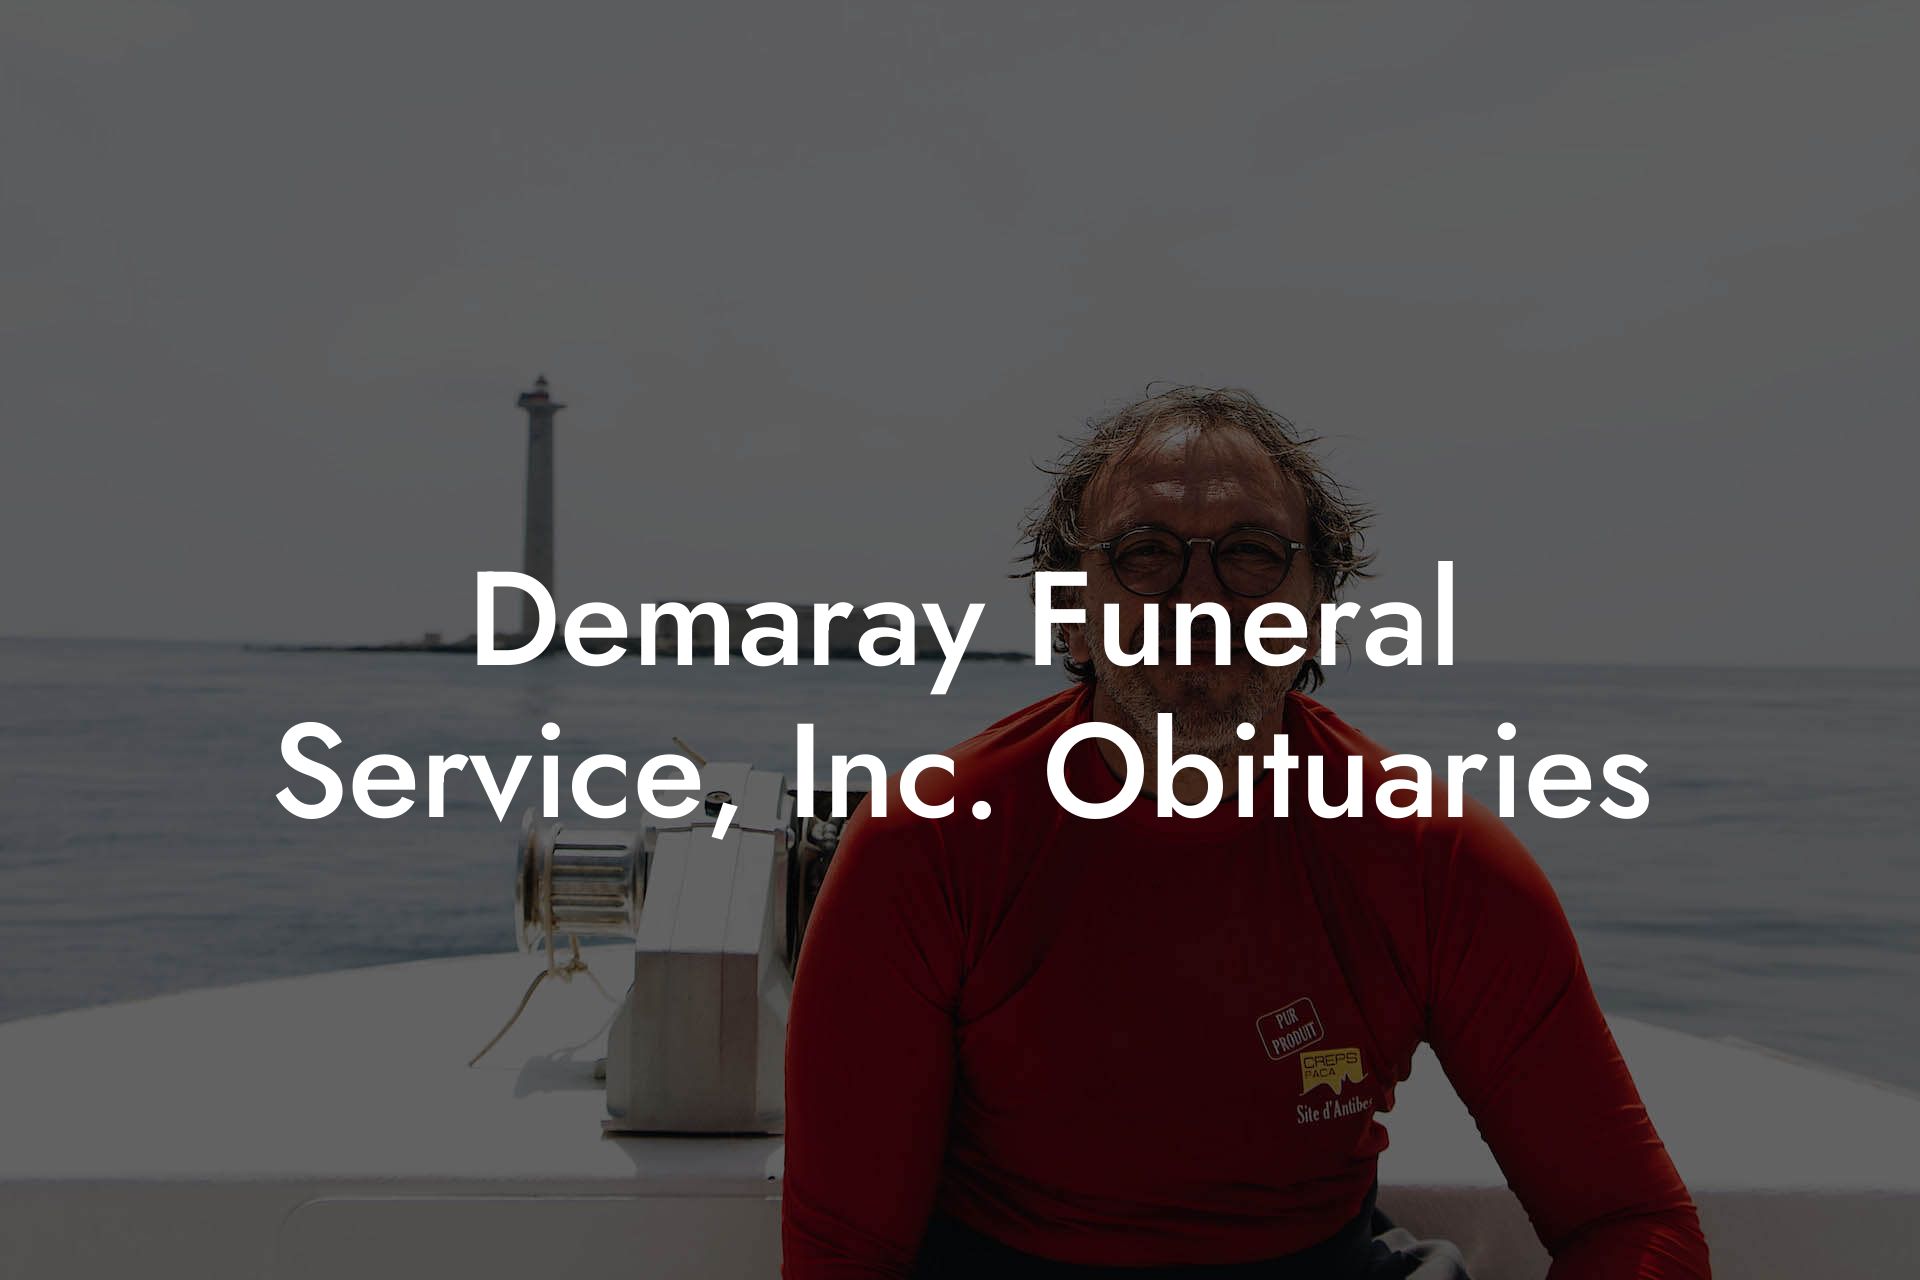 Demaray Funeral Service, Inc. Obituaries